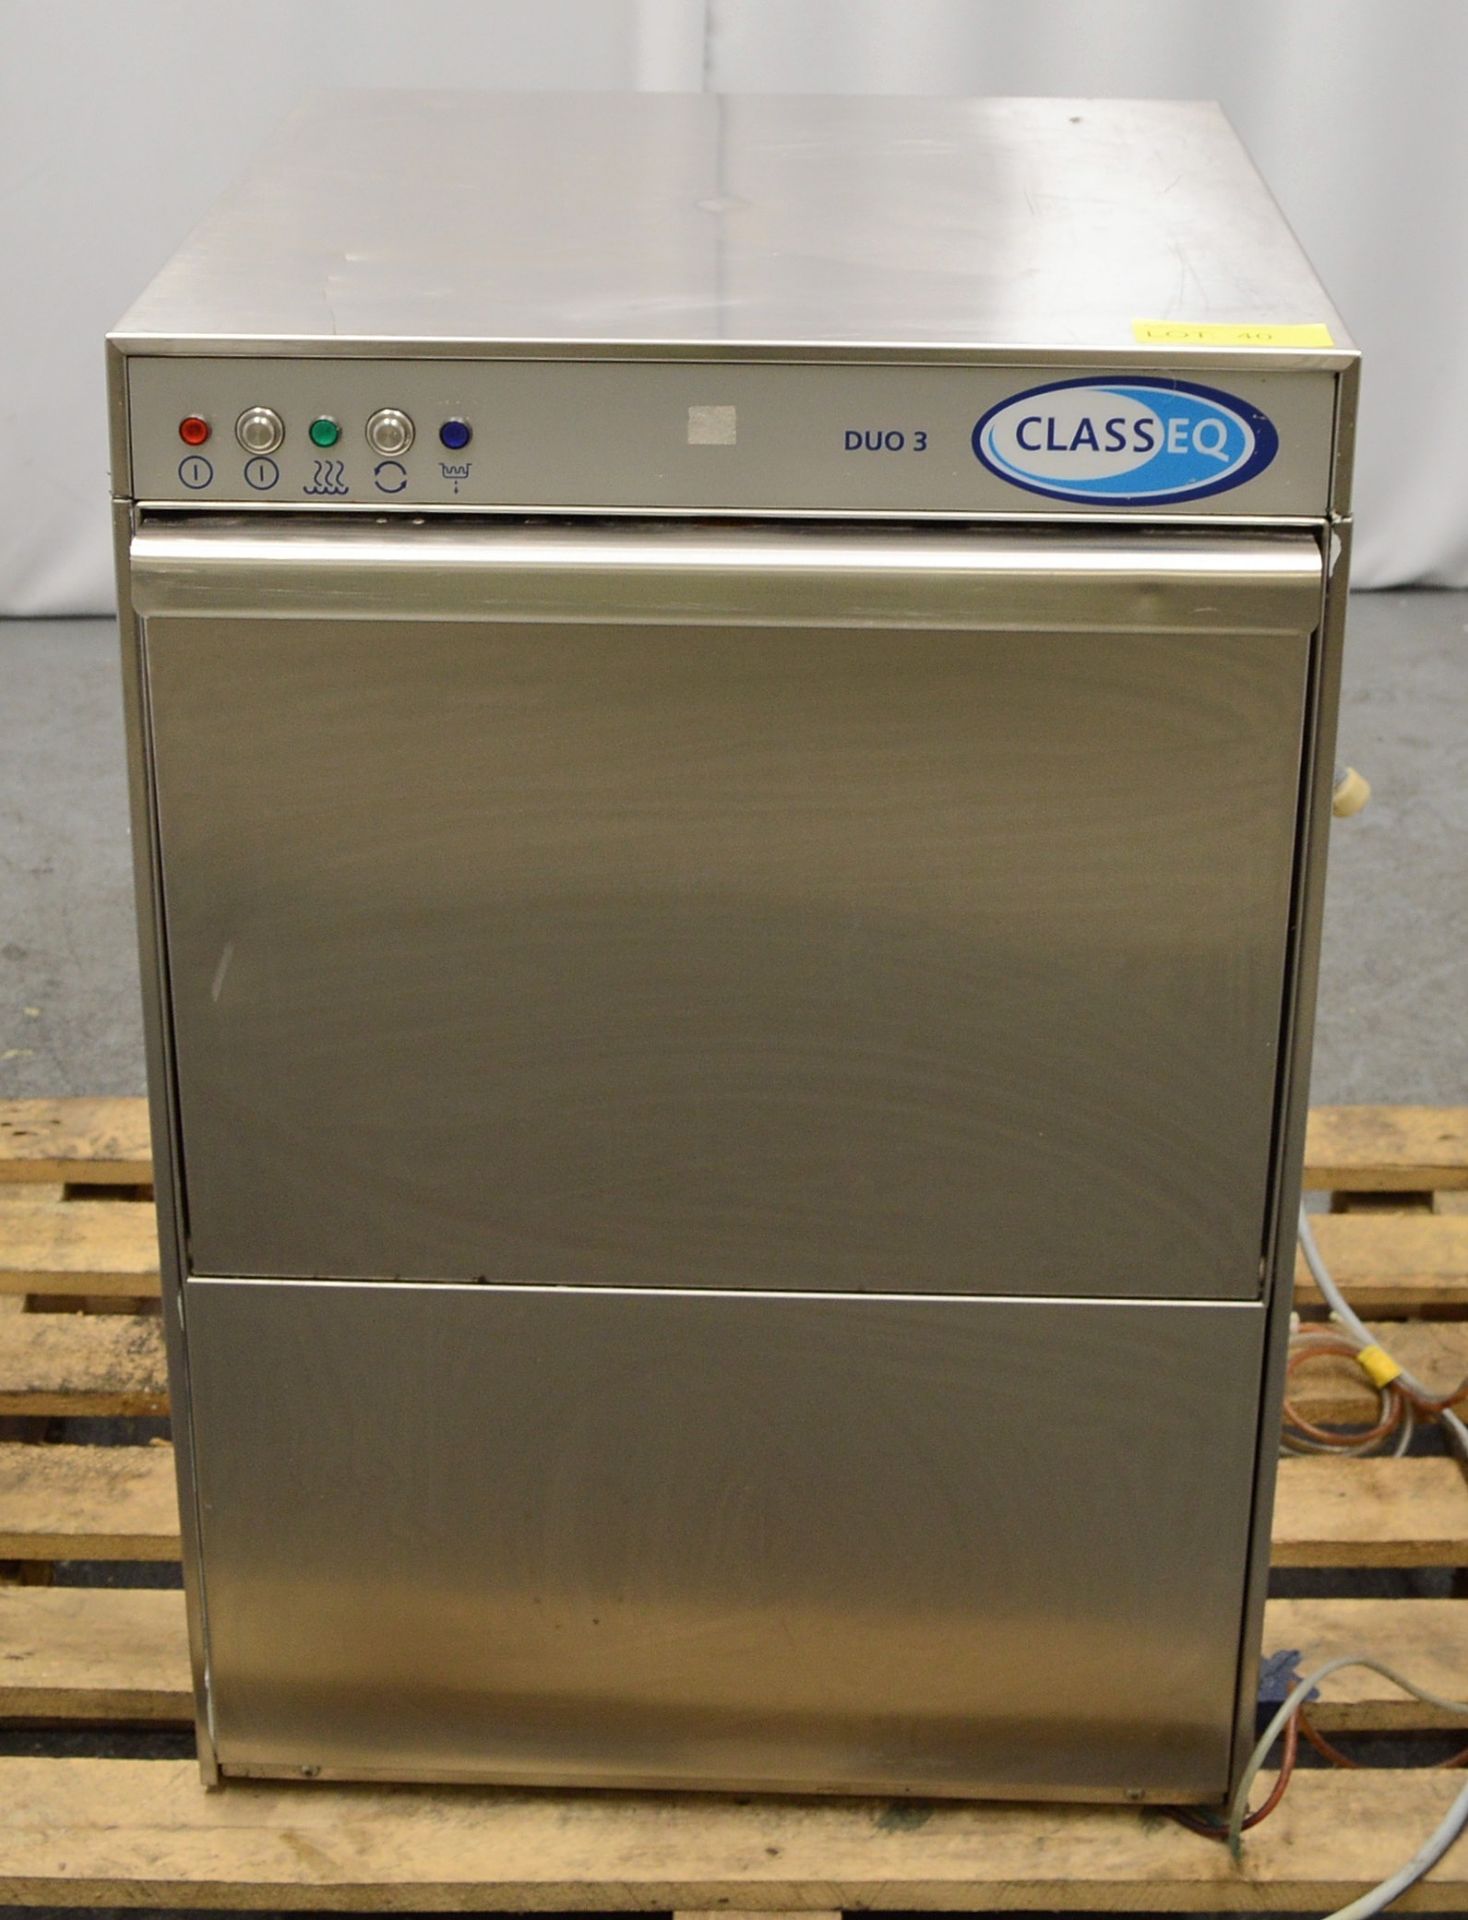 Class EQ DUO308 6.9kW Dishwasher.